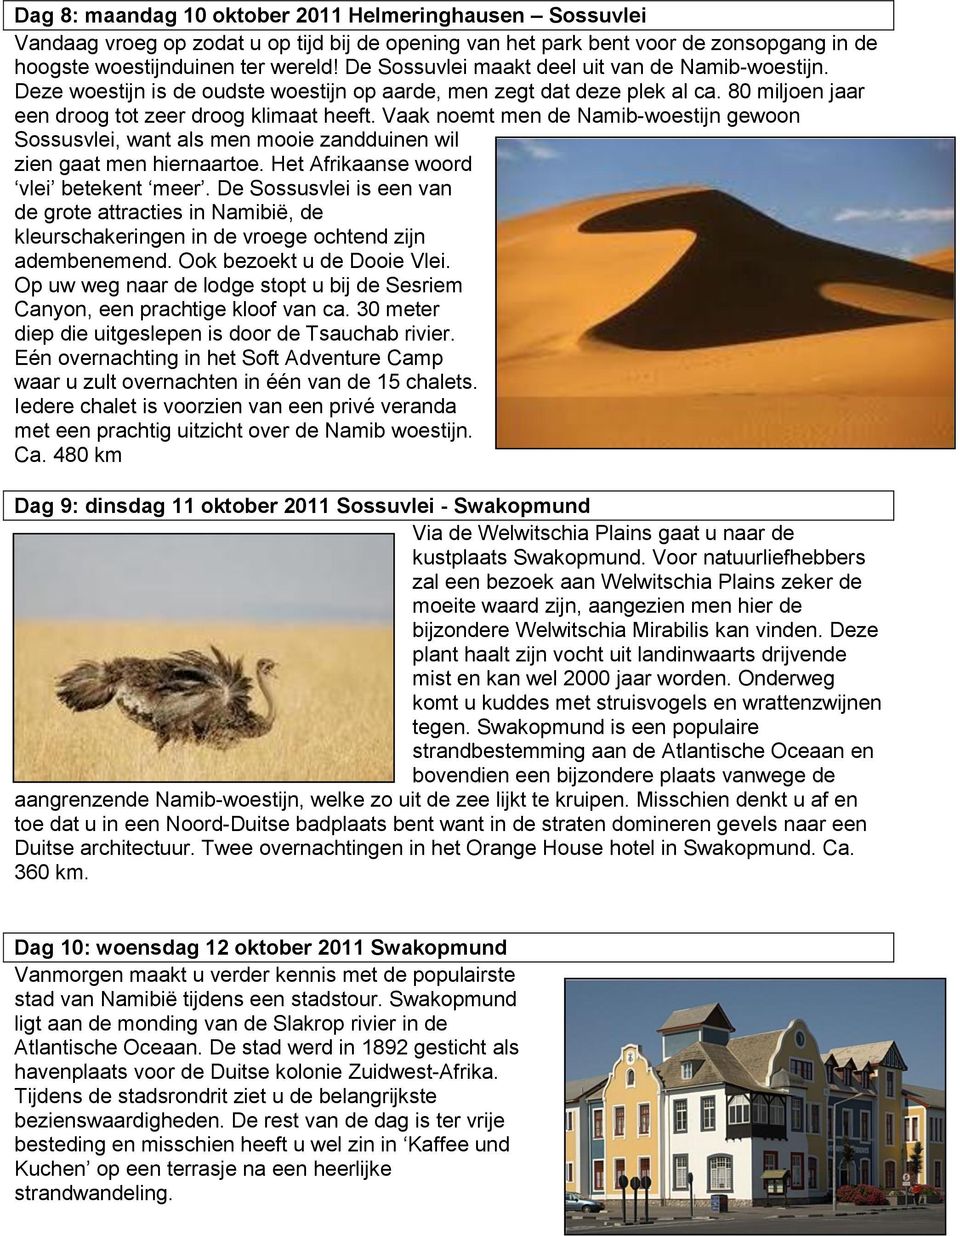 Vaak noemt men de Namib-woestijn gewoon Sossusvlei, want als men mooie zandduinen wil zien gaat men hiernaartoe. Het Afrikaanse woord vlei betekent meer.